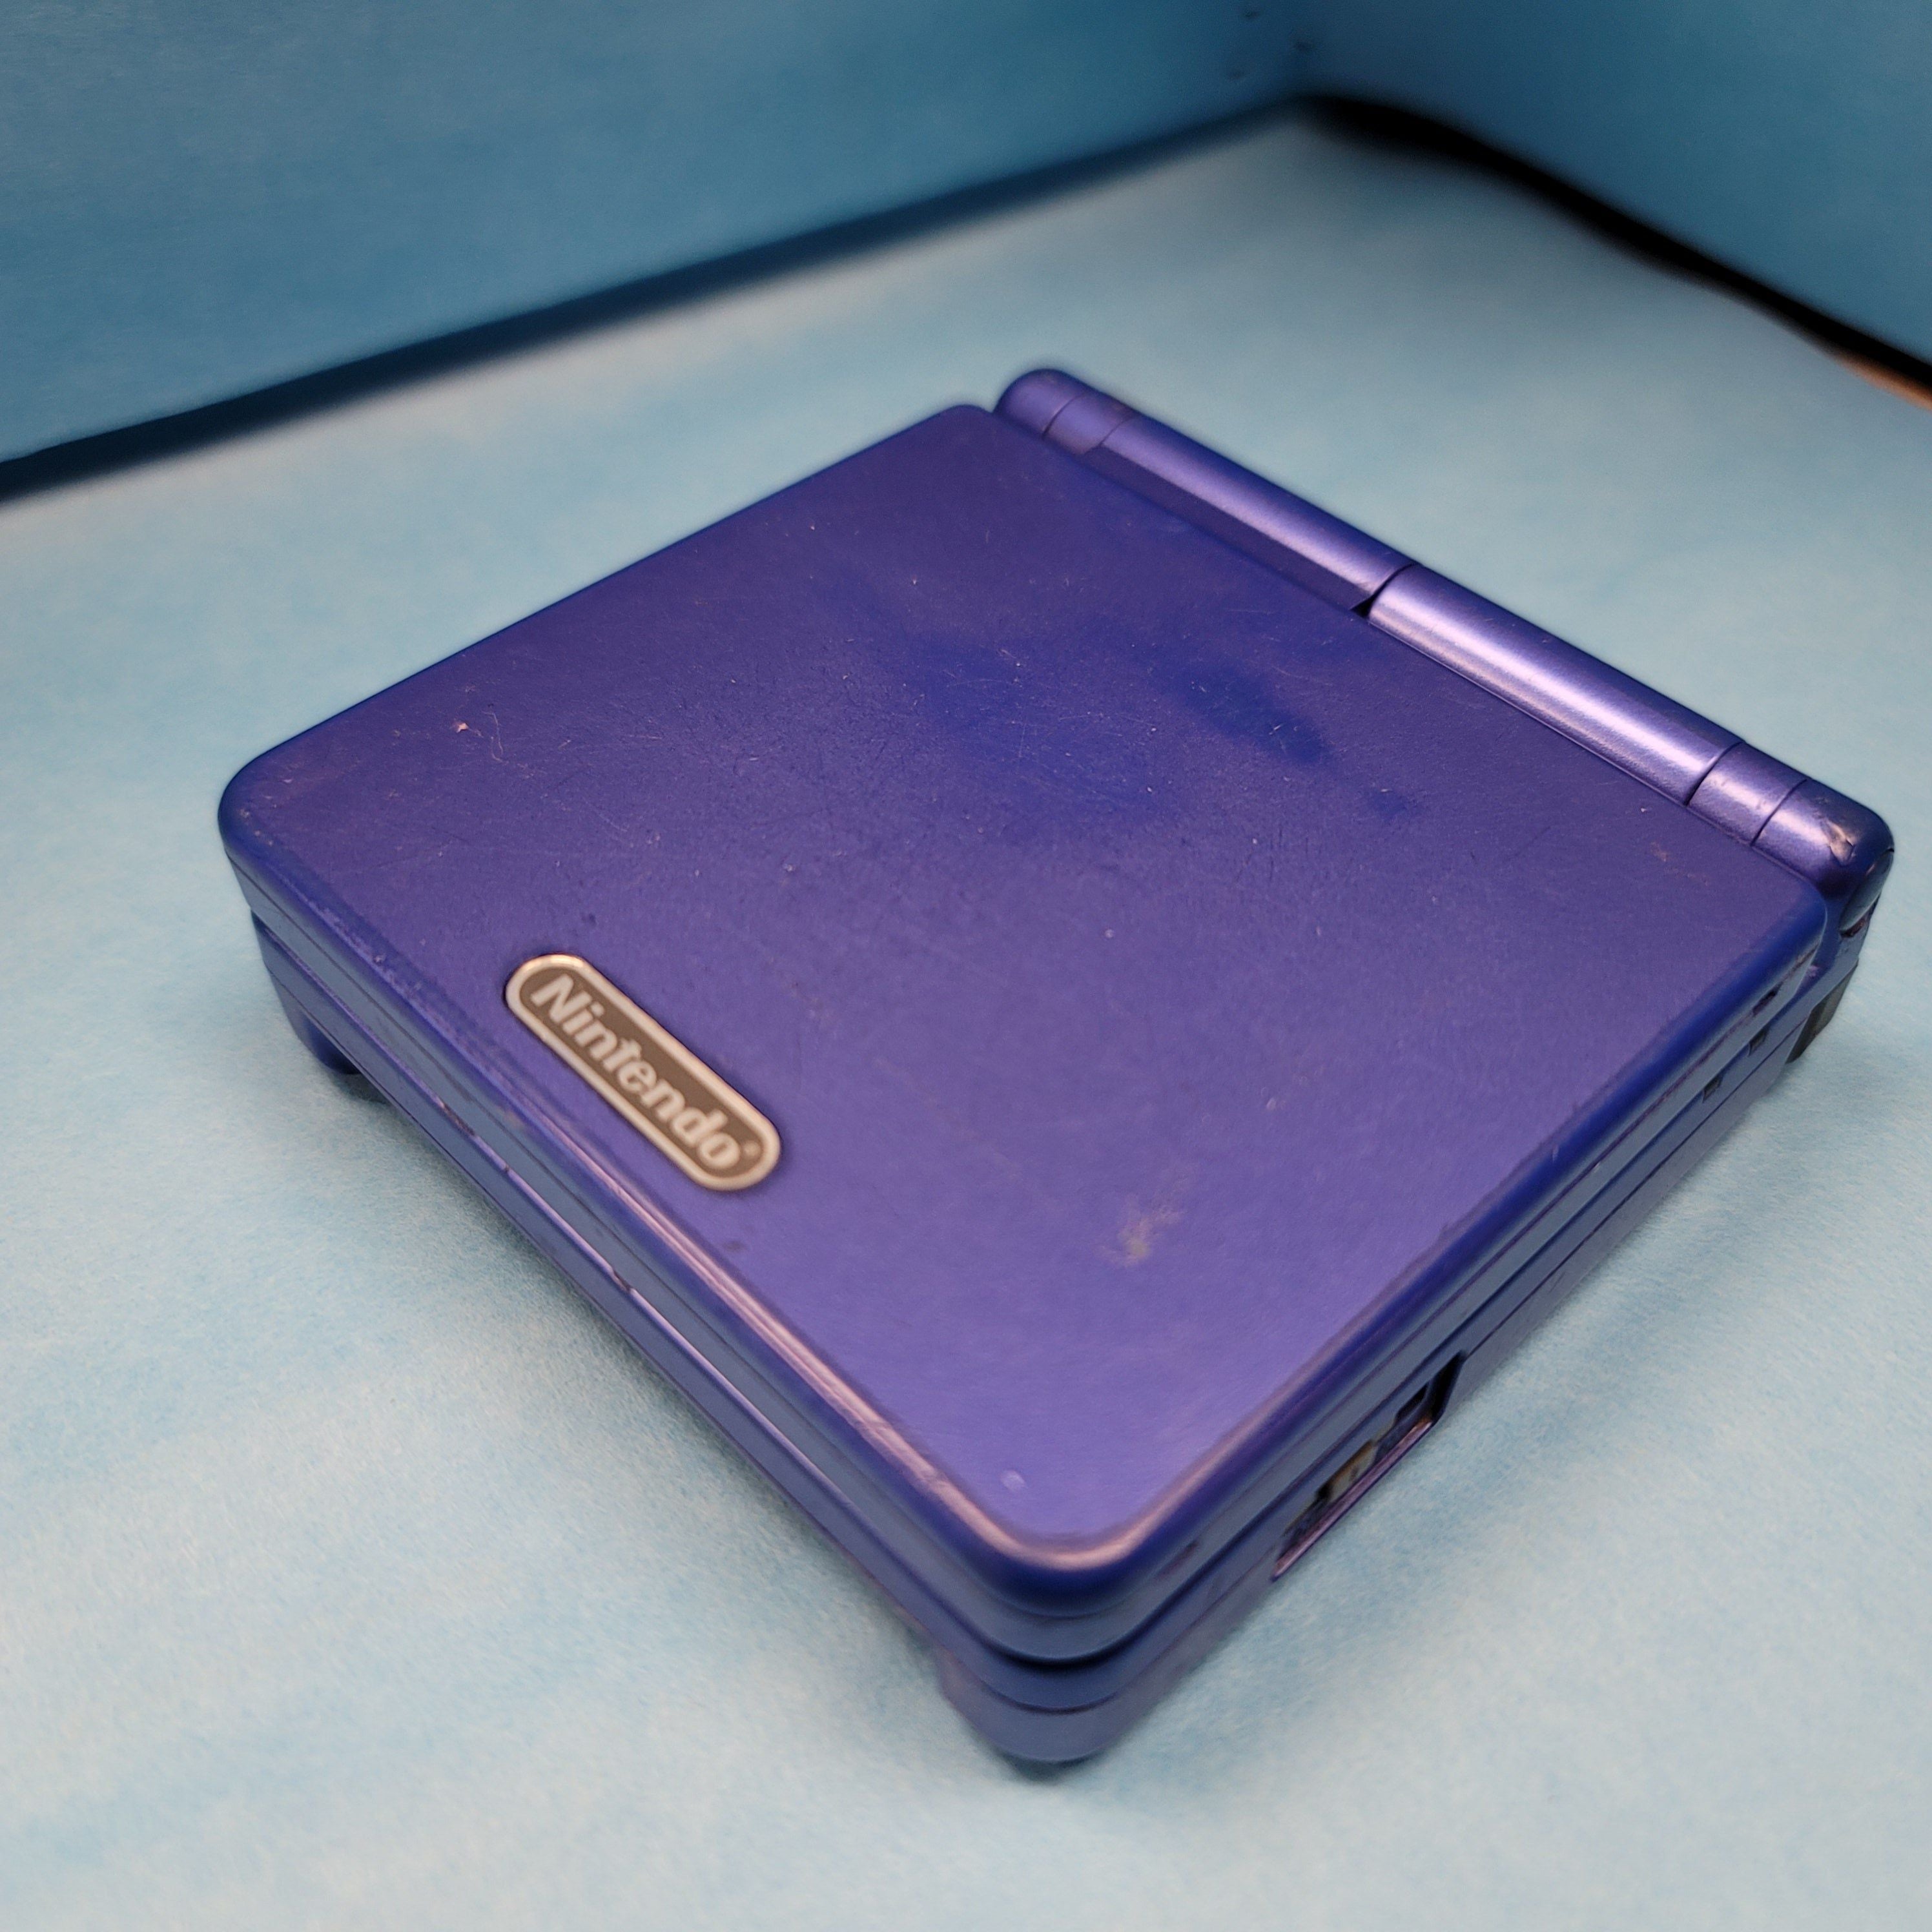 Game Boy Advance SP System (Front Lit) (Cobalt / Reduced)